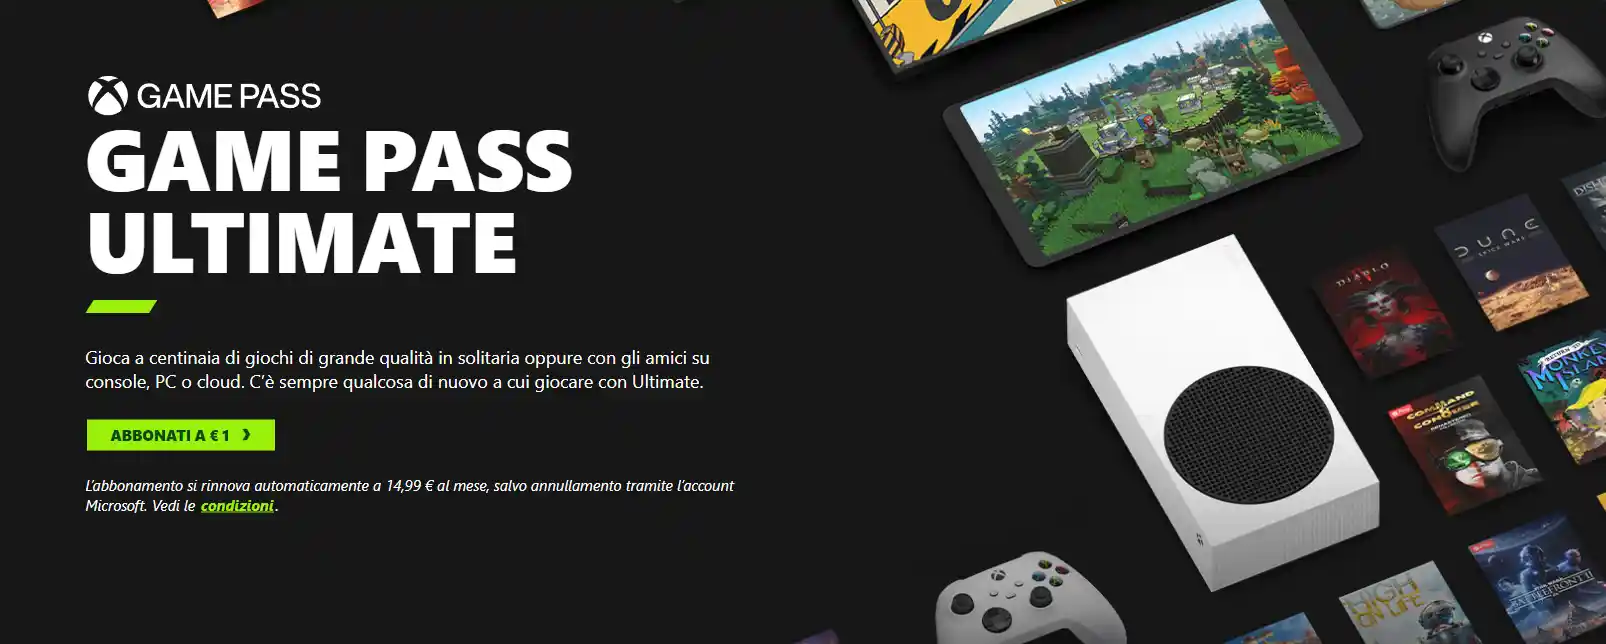 Xbox Game Pass Ultimate regala 3 mesi di Apple TV+ - come attivare la promo a 1 euro e riscattare il free trial